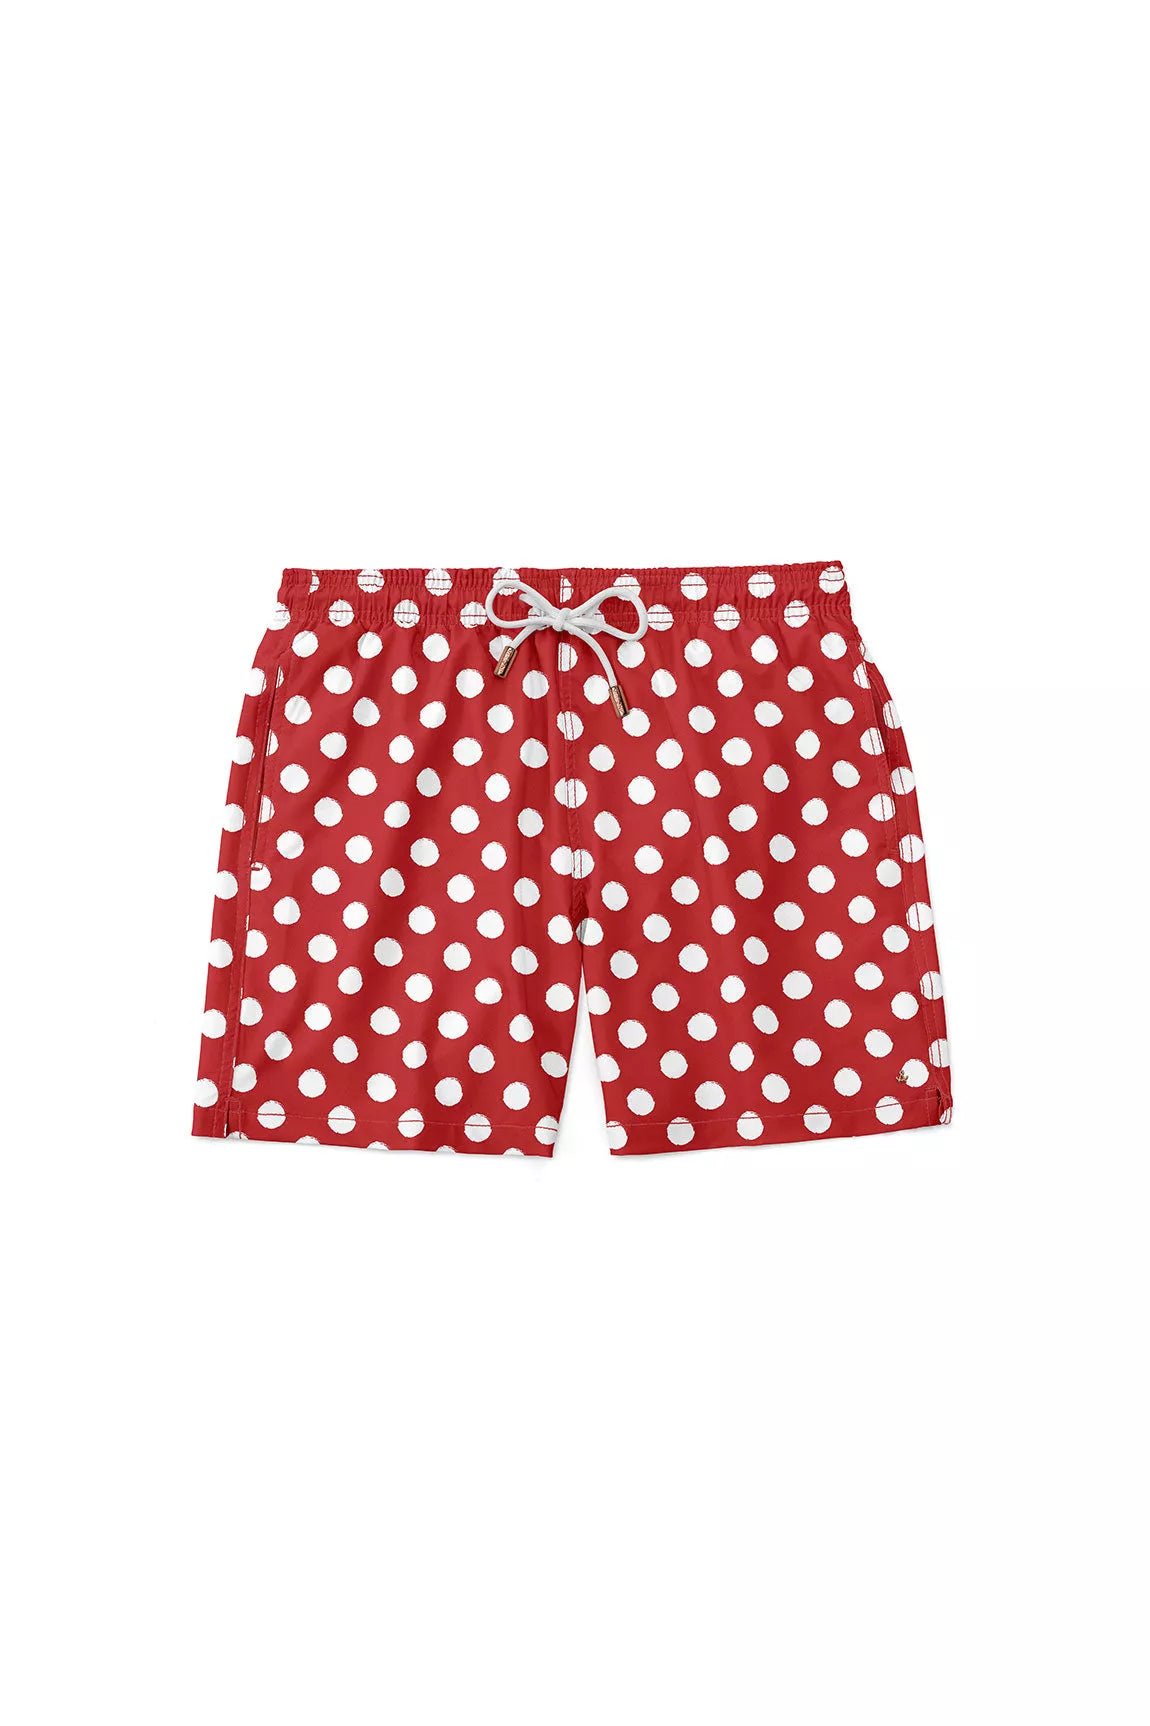 Pantaloneta Vintage Dots Hot Red